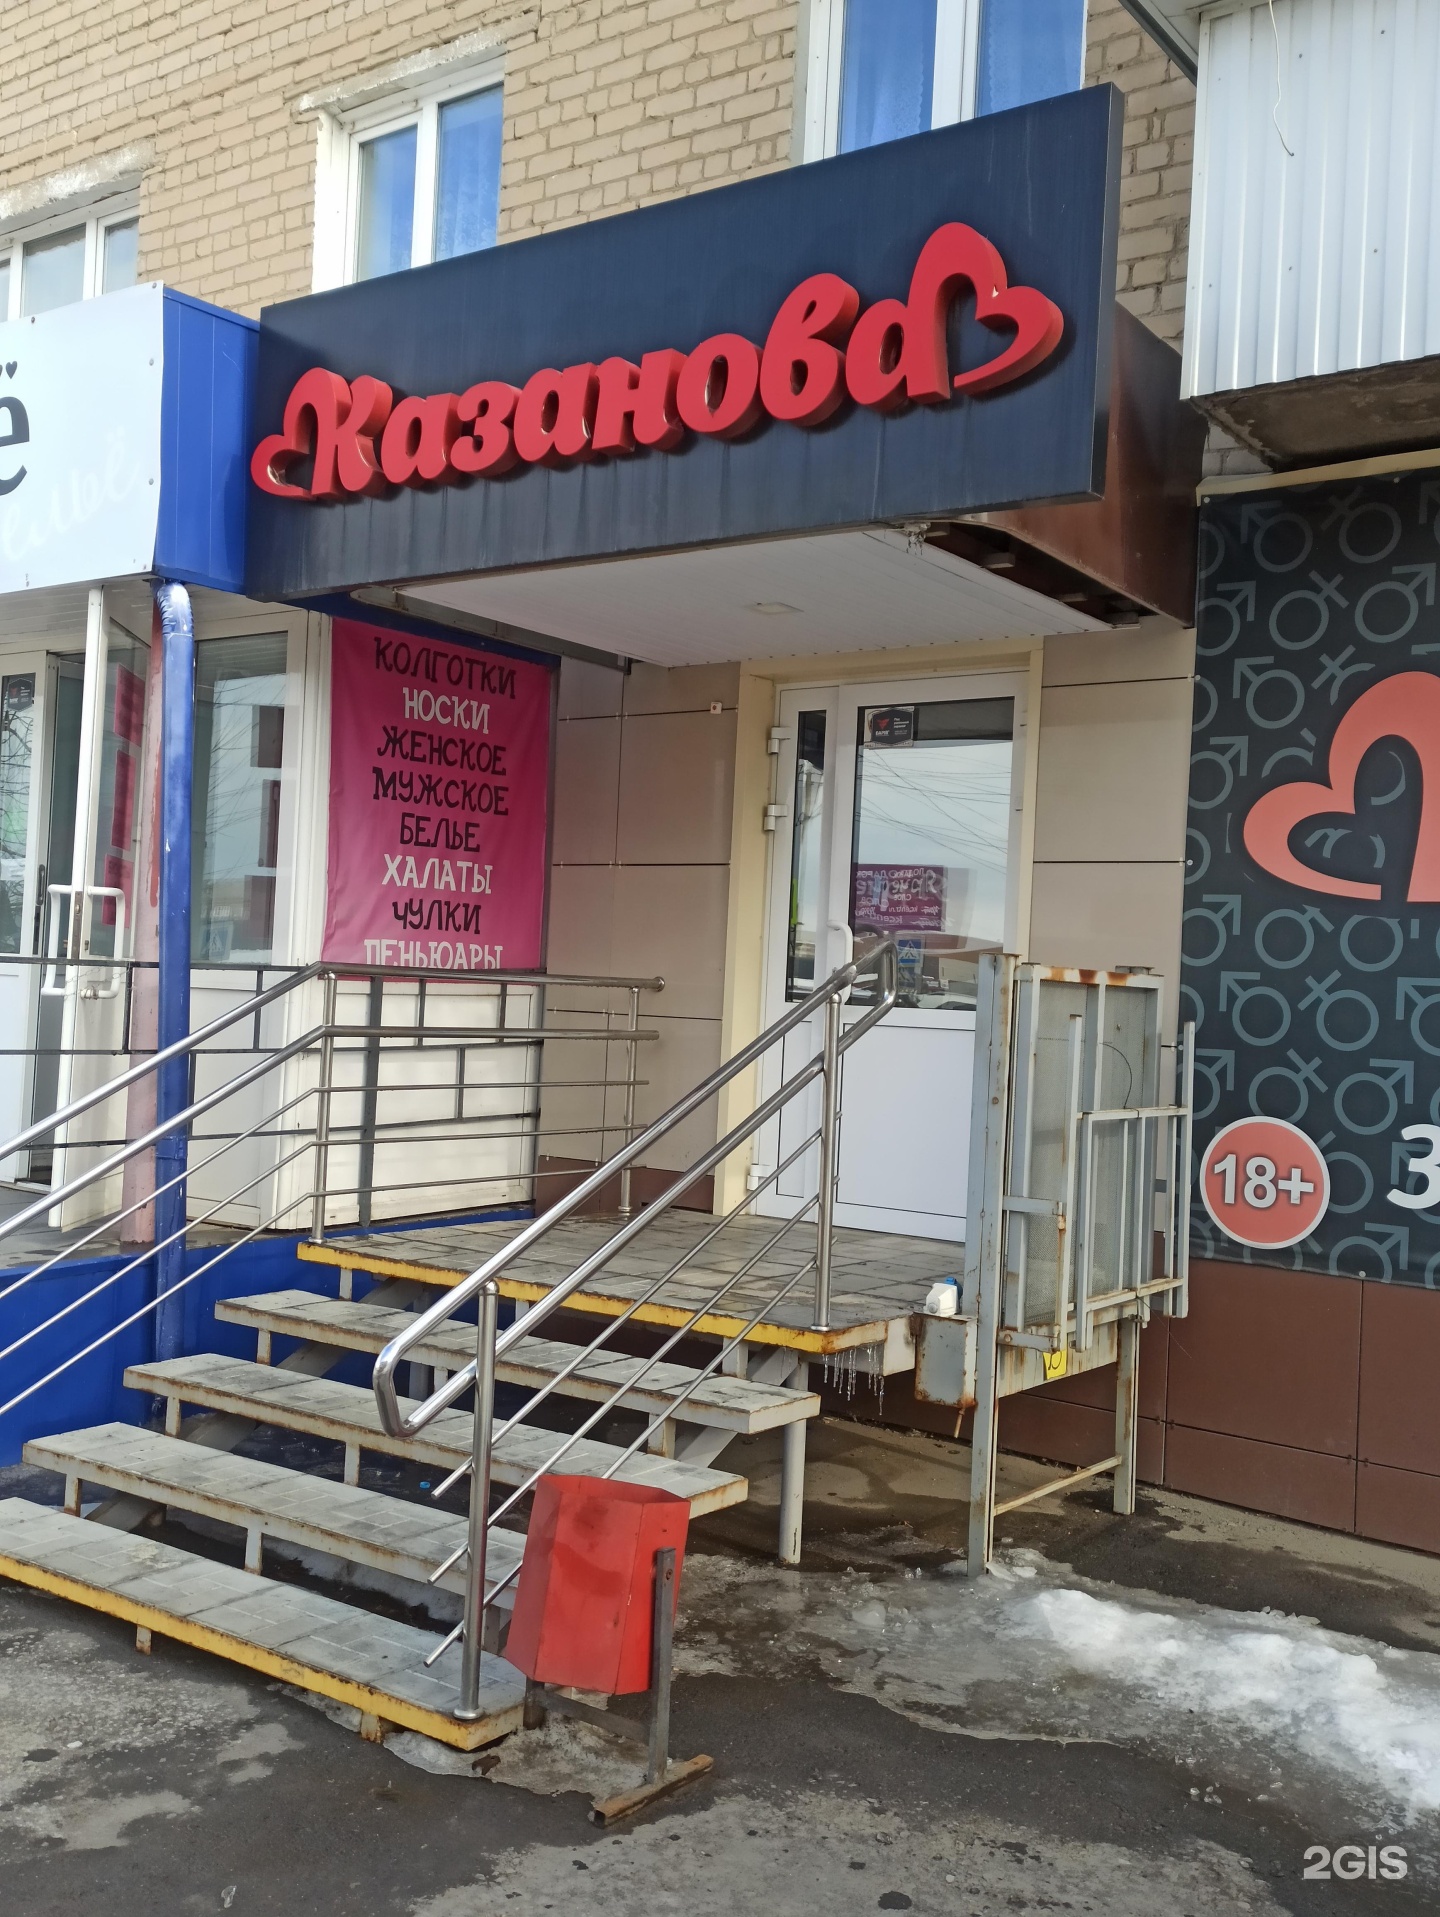 Секс шоп и интим магазин для взрослых в Нижнем тагиле - Казанова